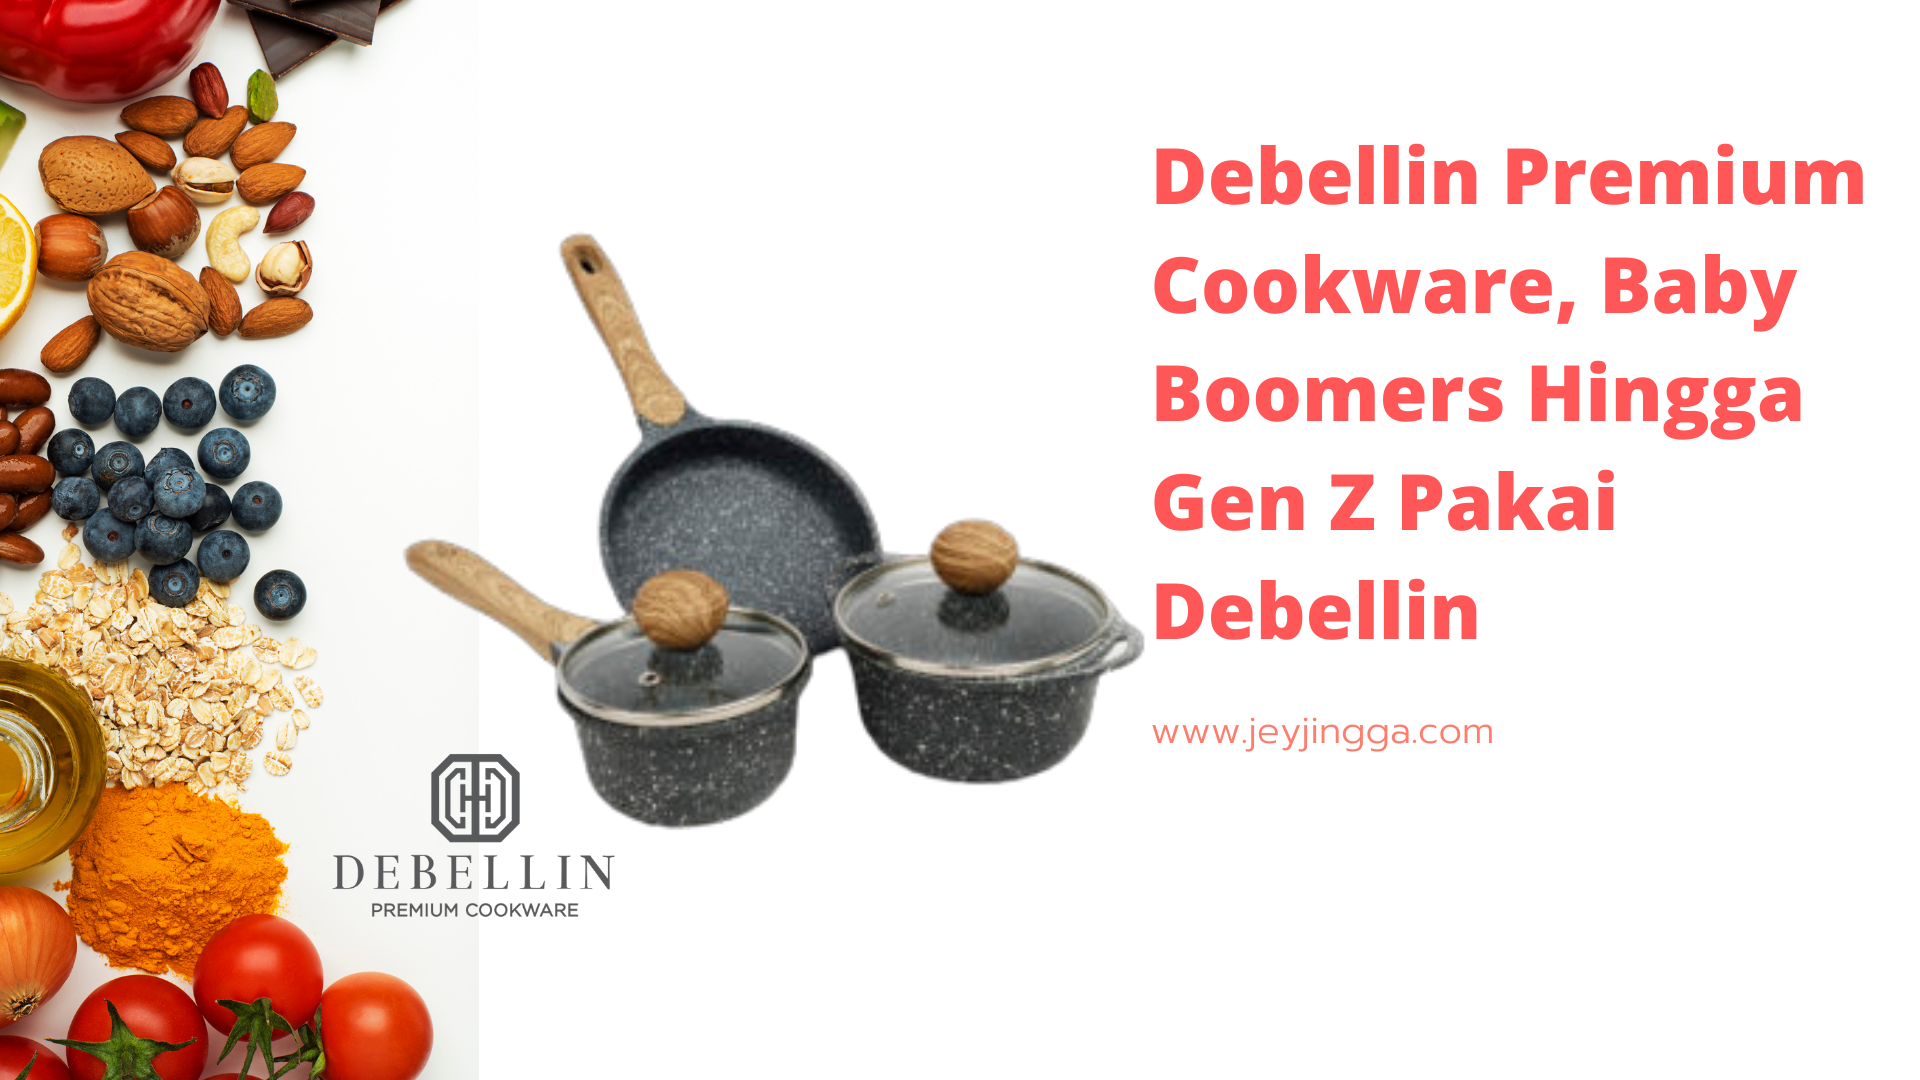 Debellin Premium Cookware, Baby Boomers Hingga Gen Z Pakai Debellin